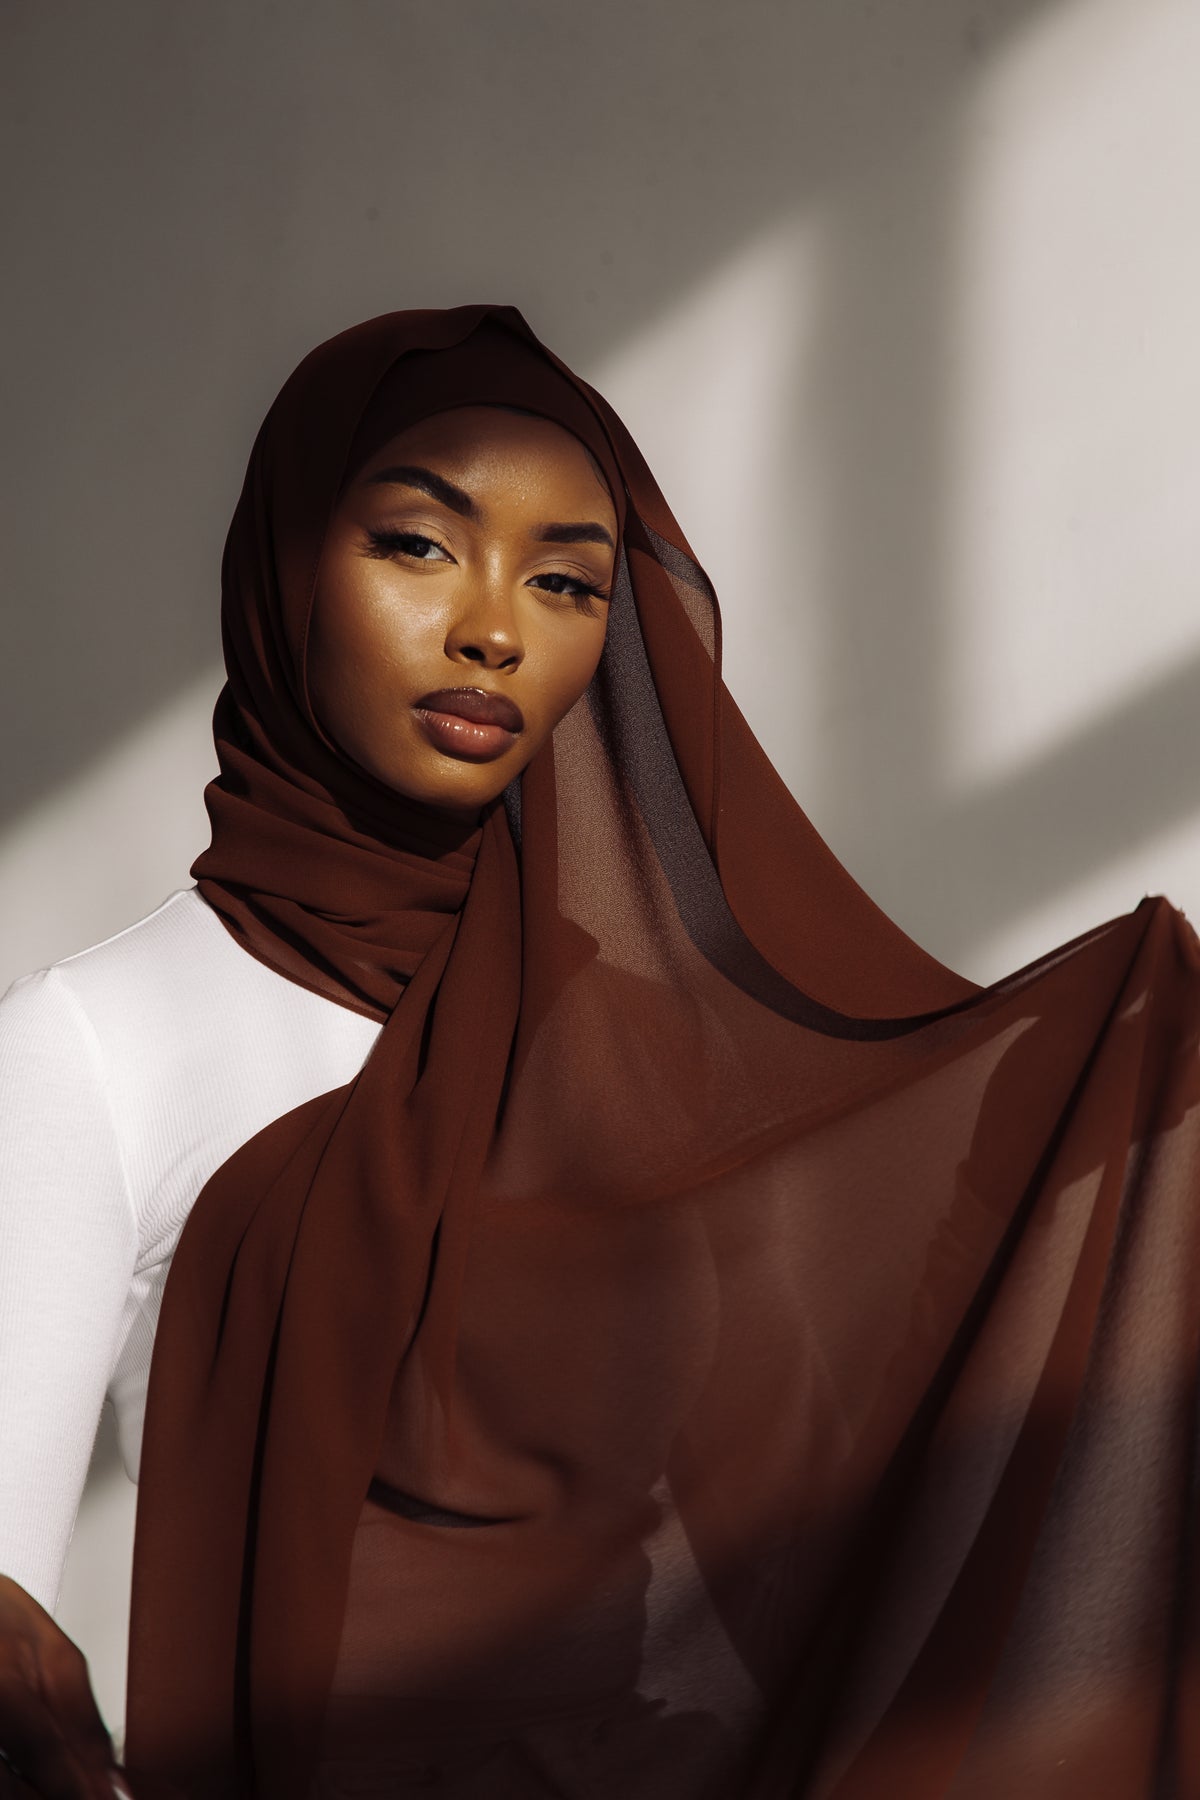 Bandana Hijab Undercap | Hijab Caps | Aab Nude